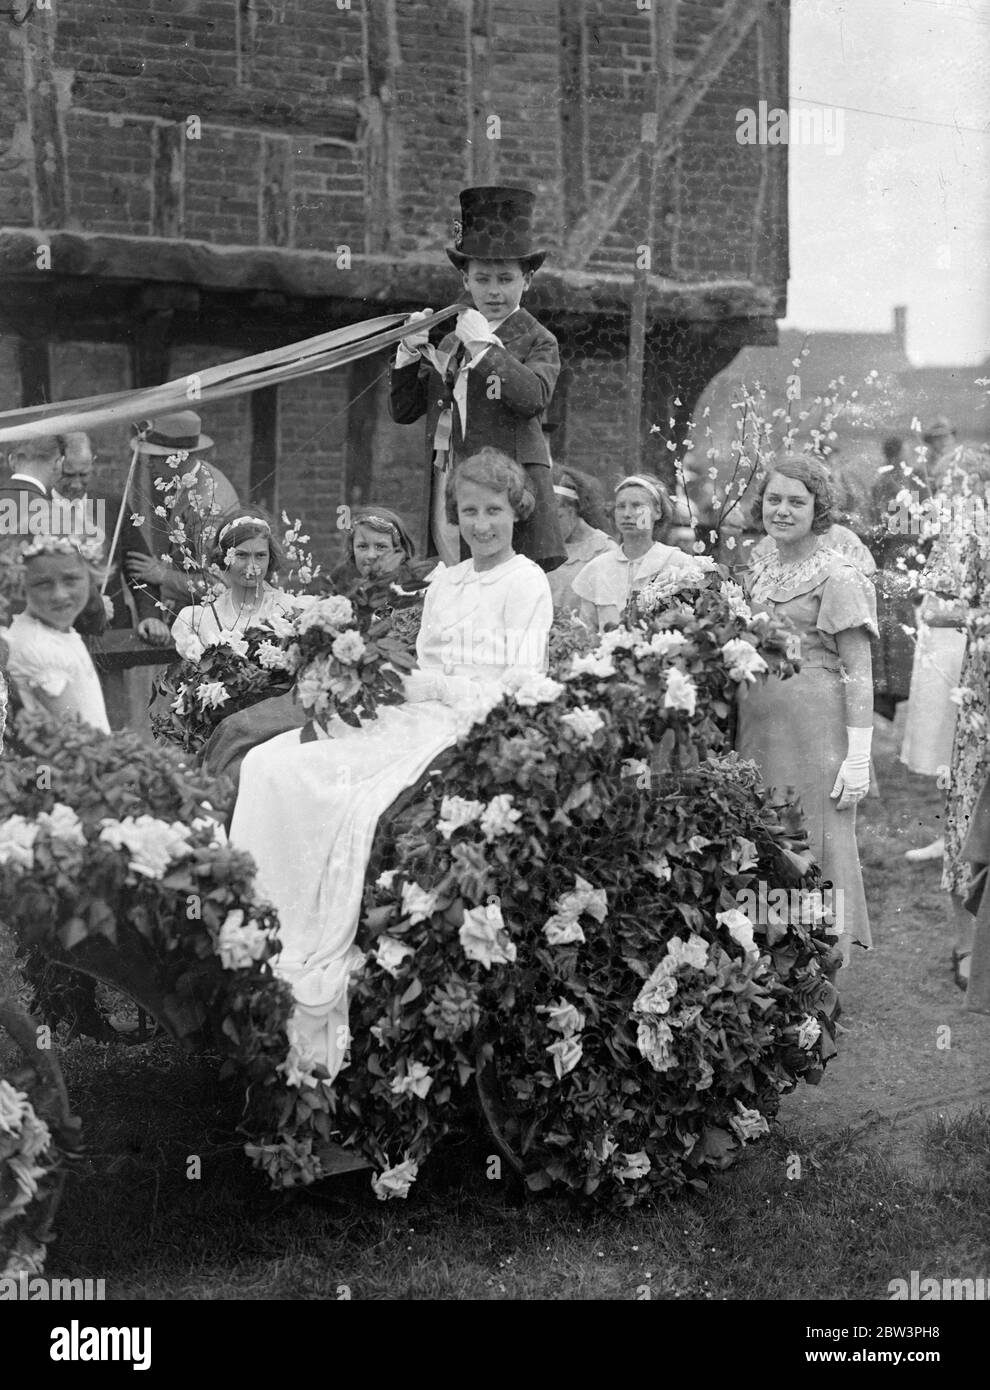 Mai Königin gekrönt in einem Bedfordshire Dorf. Modernes Mikrofon-Bophon bei traditioneller Zeremonie. Nach einer Prozession durch die Straßen zu Elstow Green, Miss Betty Crouch wurde gekrönt May Queen in Elstow, Bedfordshire, Geburtsort von John Bunyan. Die Zeremonie beinhaltete Maibaum und Landtänze. Die Krönung wurde von Phyllis Izzard durchgeführt, im vergangenen Jahr 's May Queen. Foto zeigt, die "Proklamation" wird in ein modernes Mikrofon gelesen. Mai 1936 Stockfoto